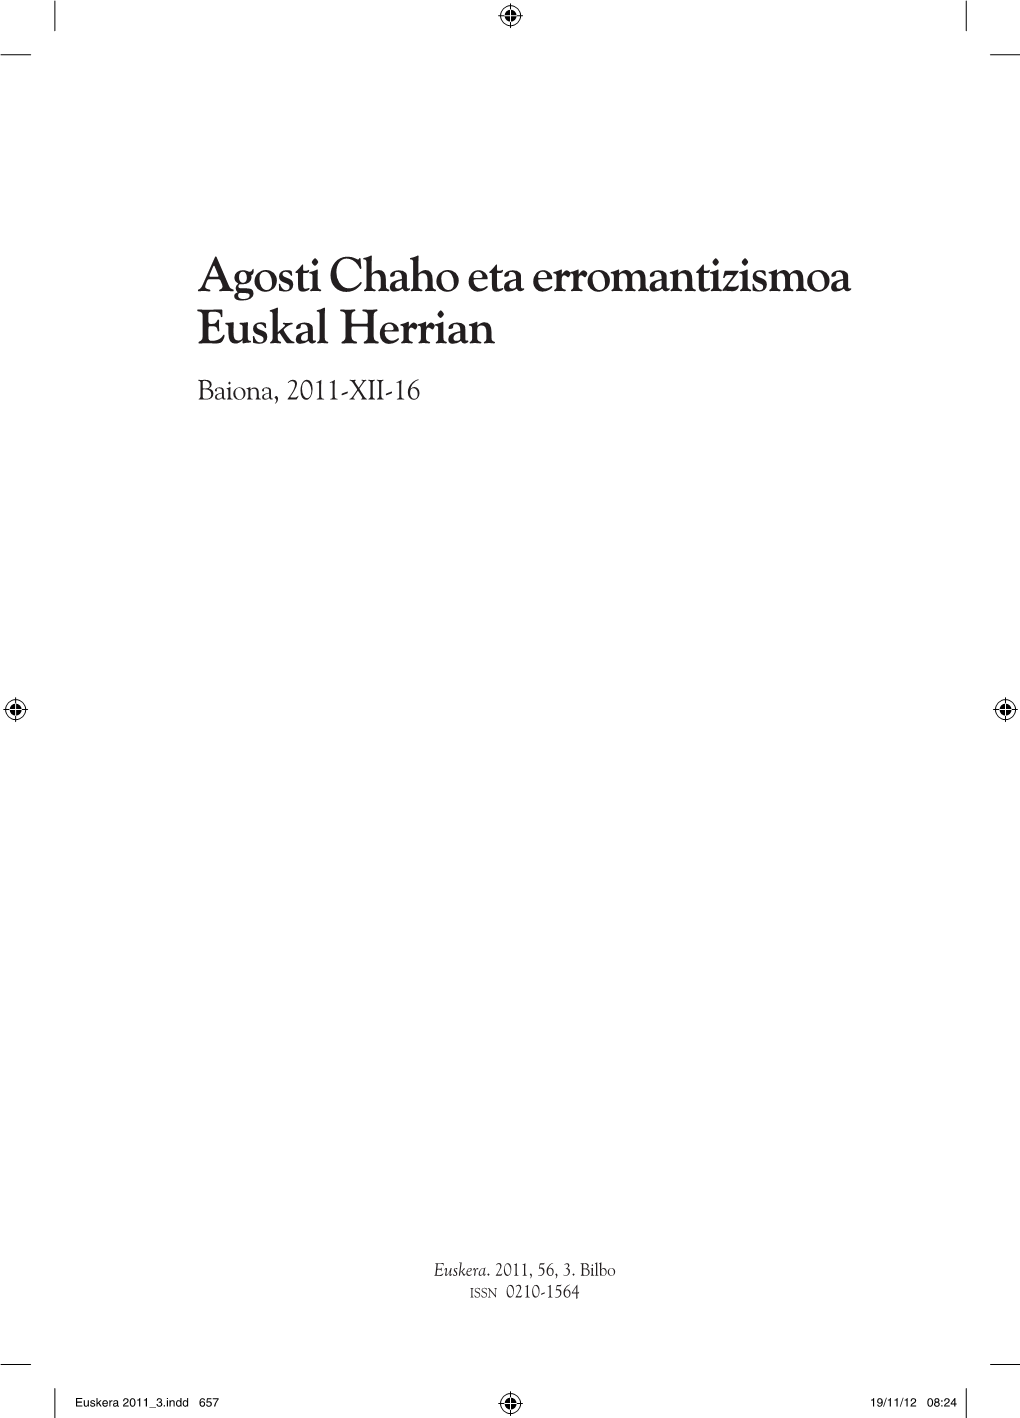 Agosti Chaho Eta Erromantizismoa Euskal Herrian Baiona, 2011-XII-16